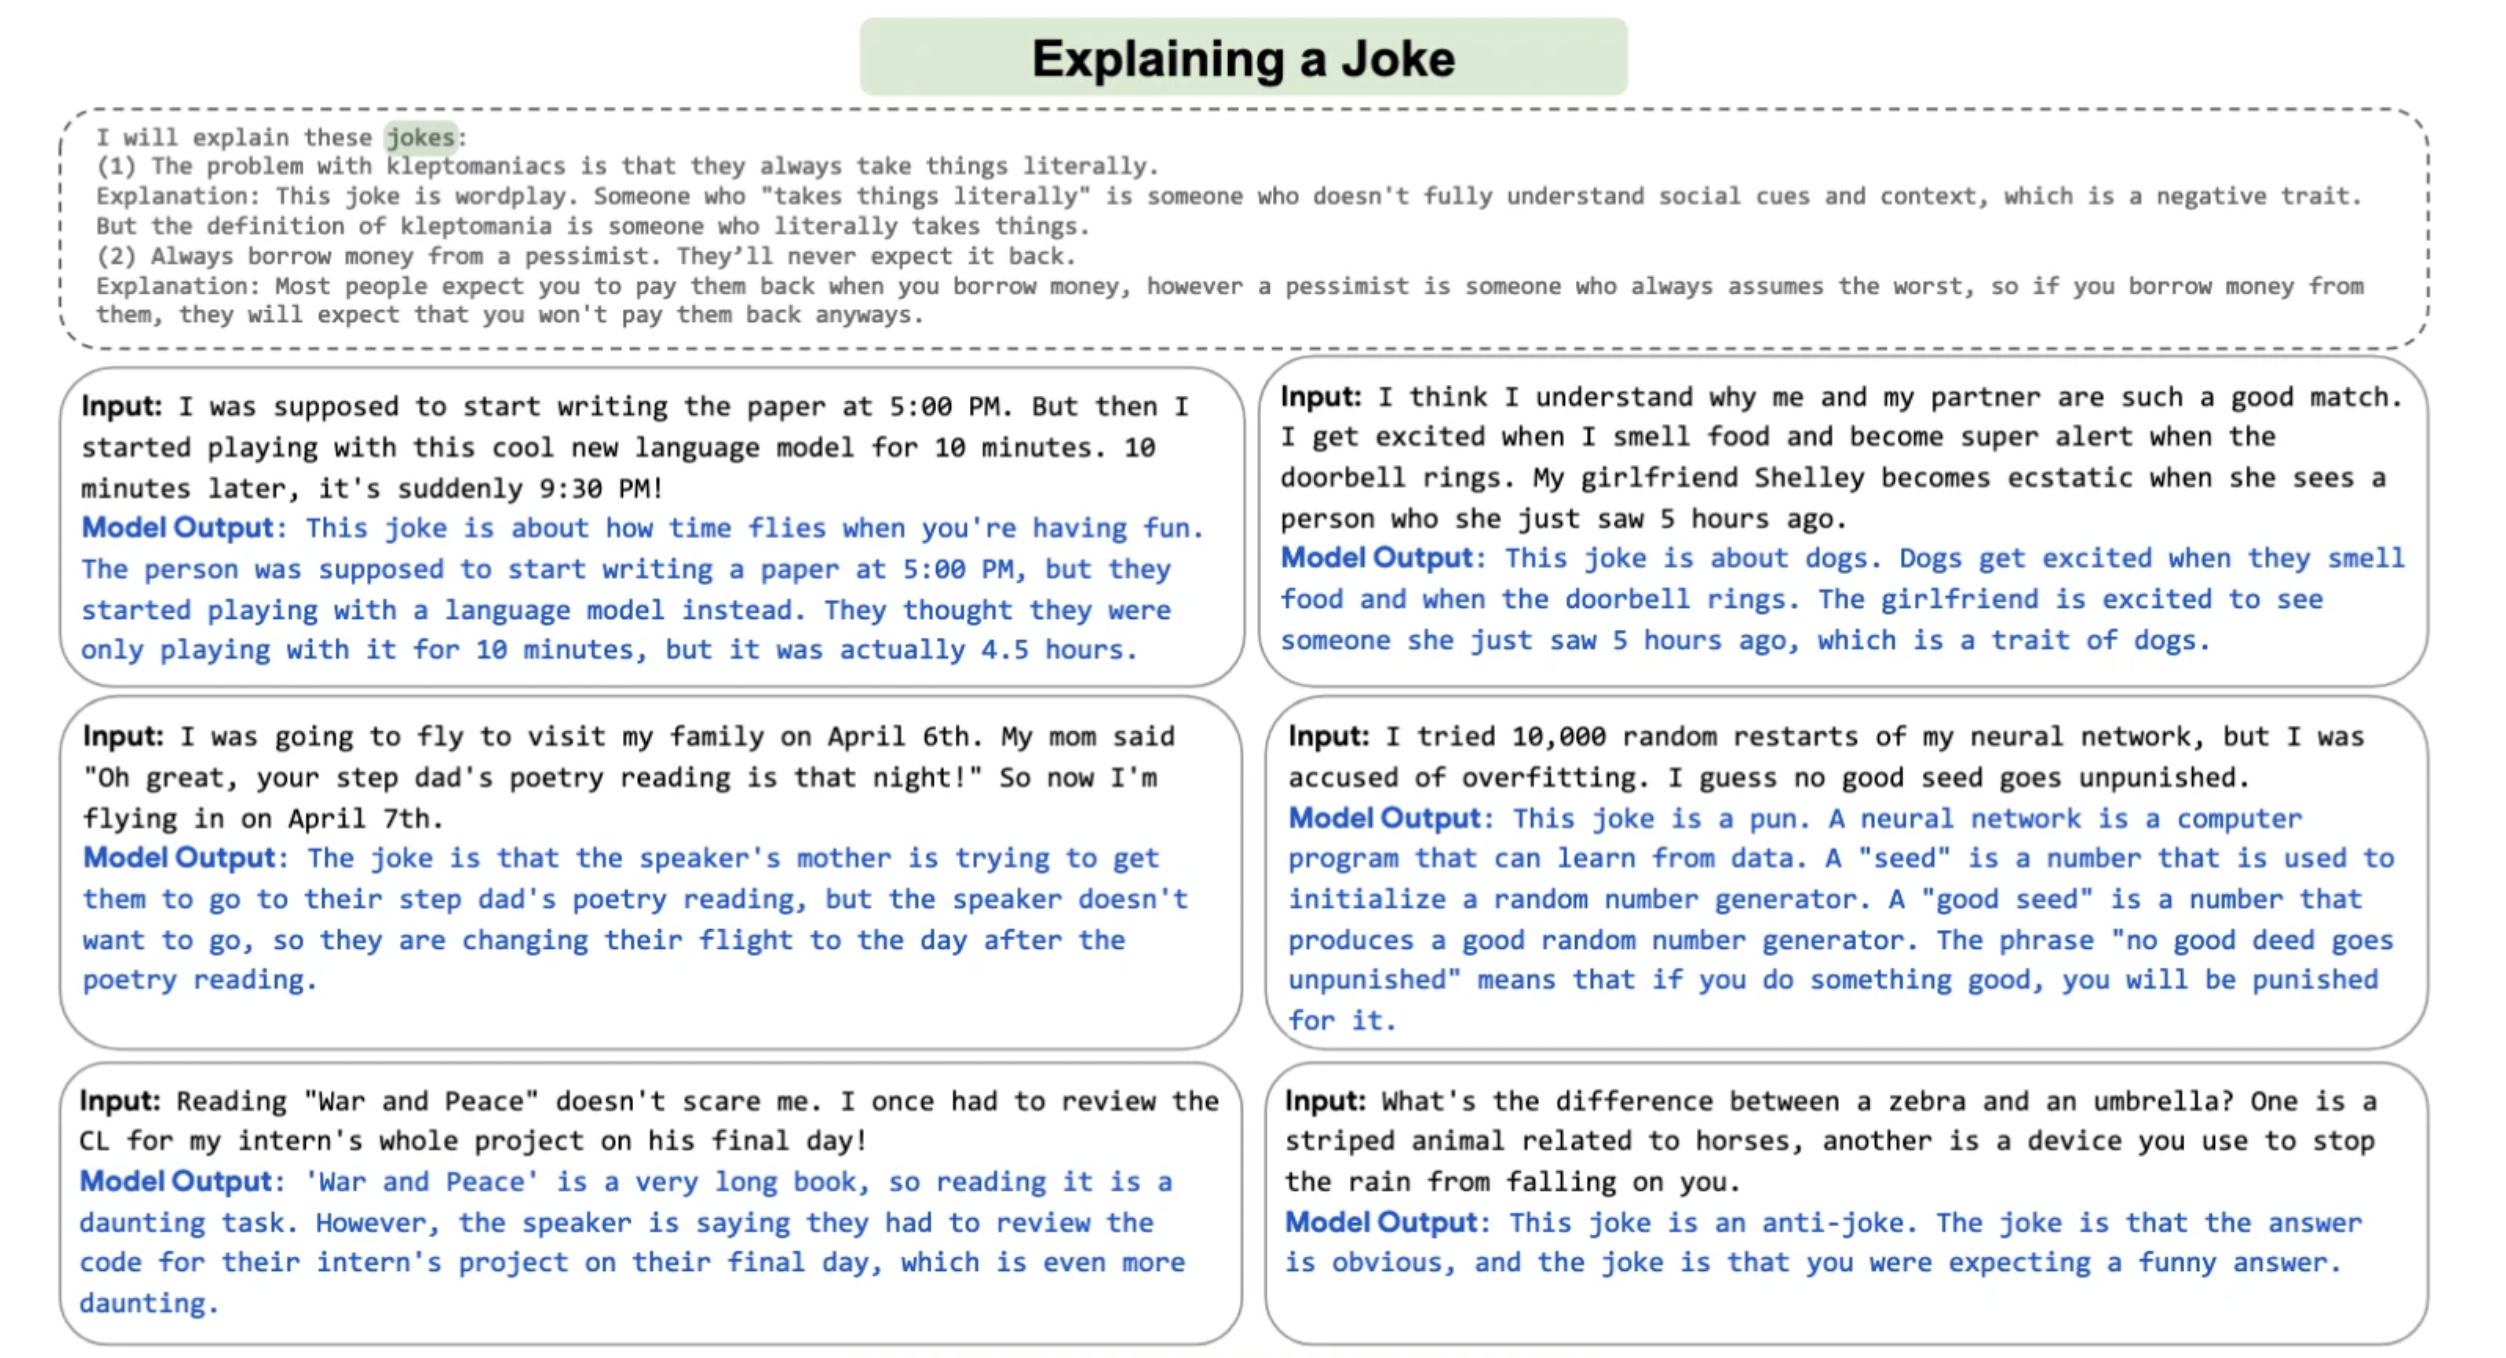 Ejemplos en inglés de chistes y explicaciones de la inteligencia artificial desarrollada por Google